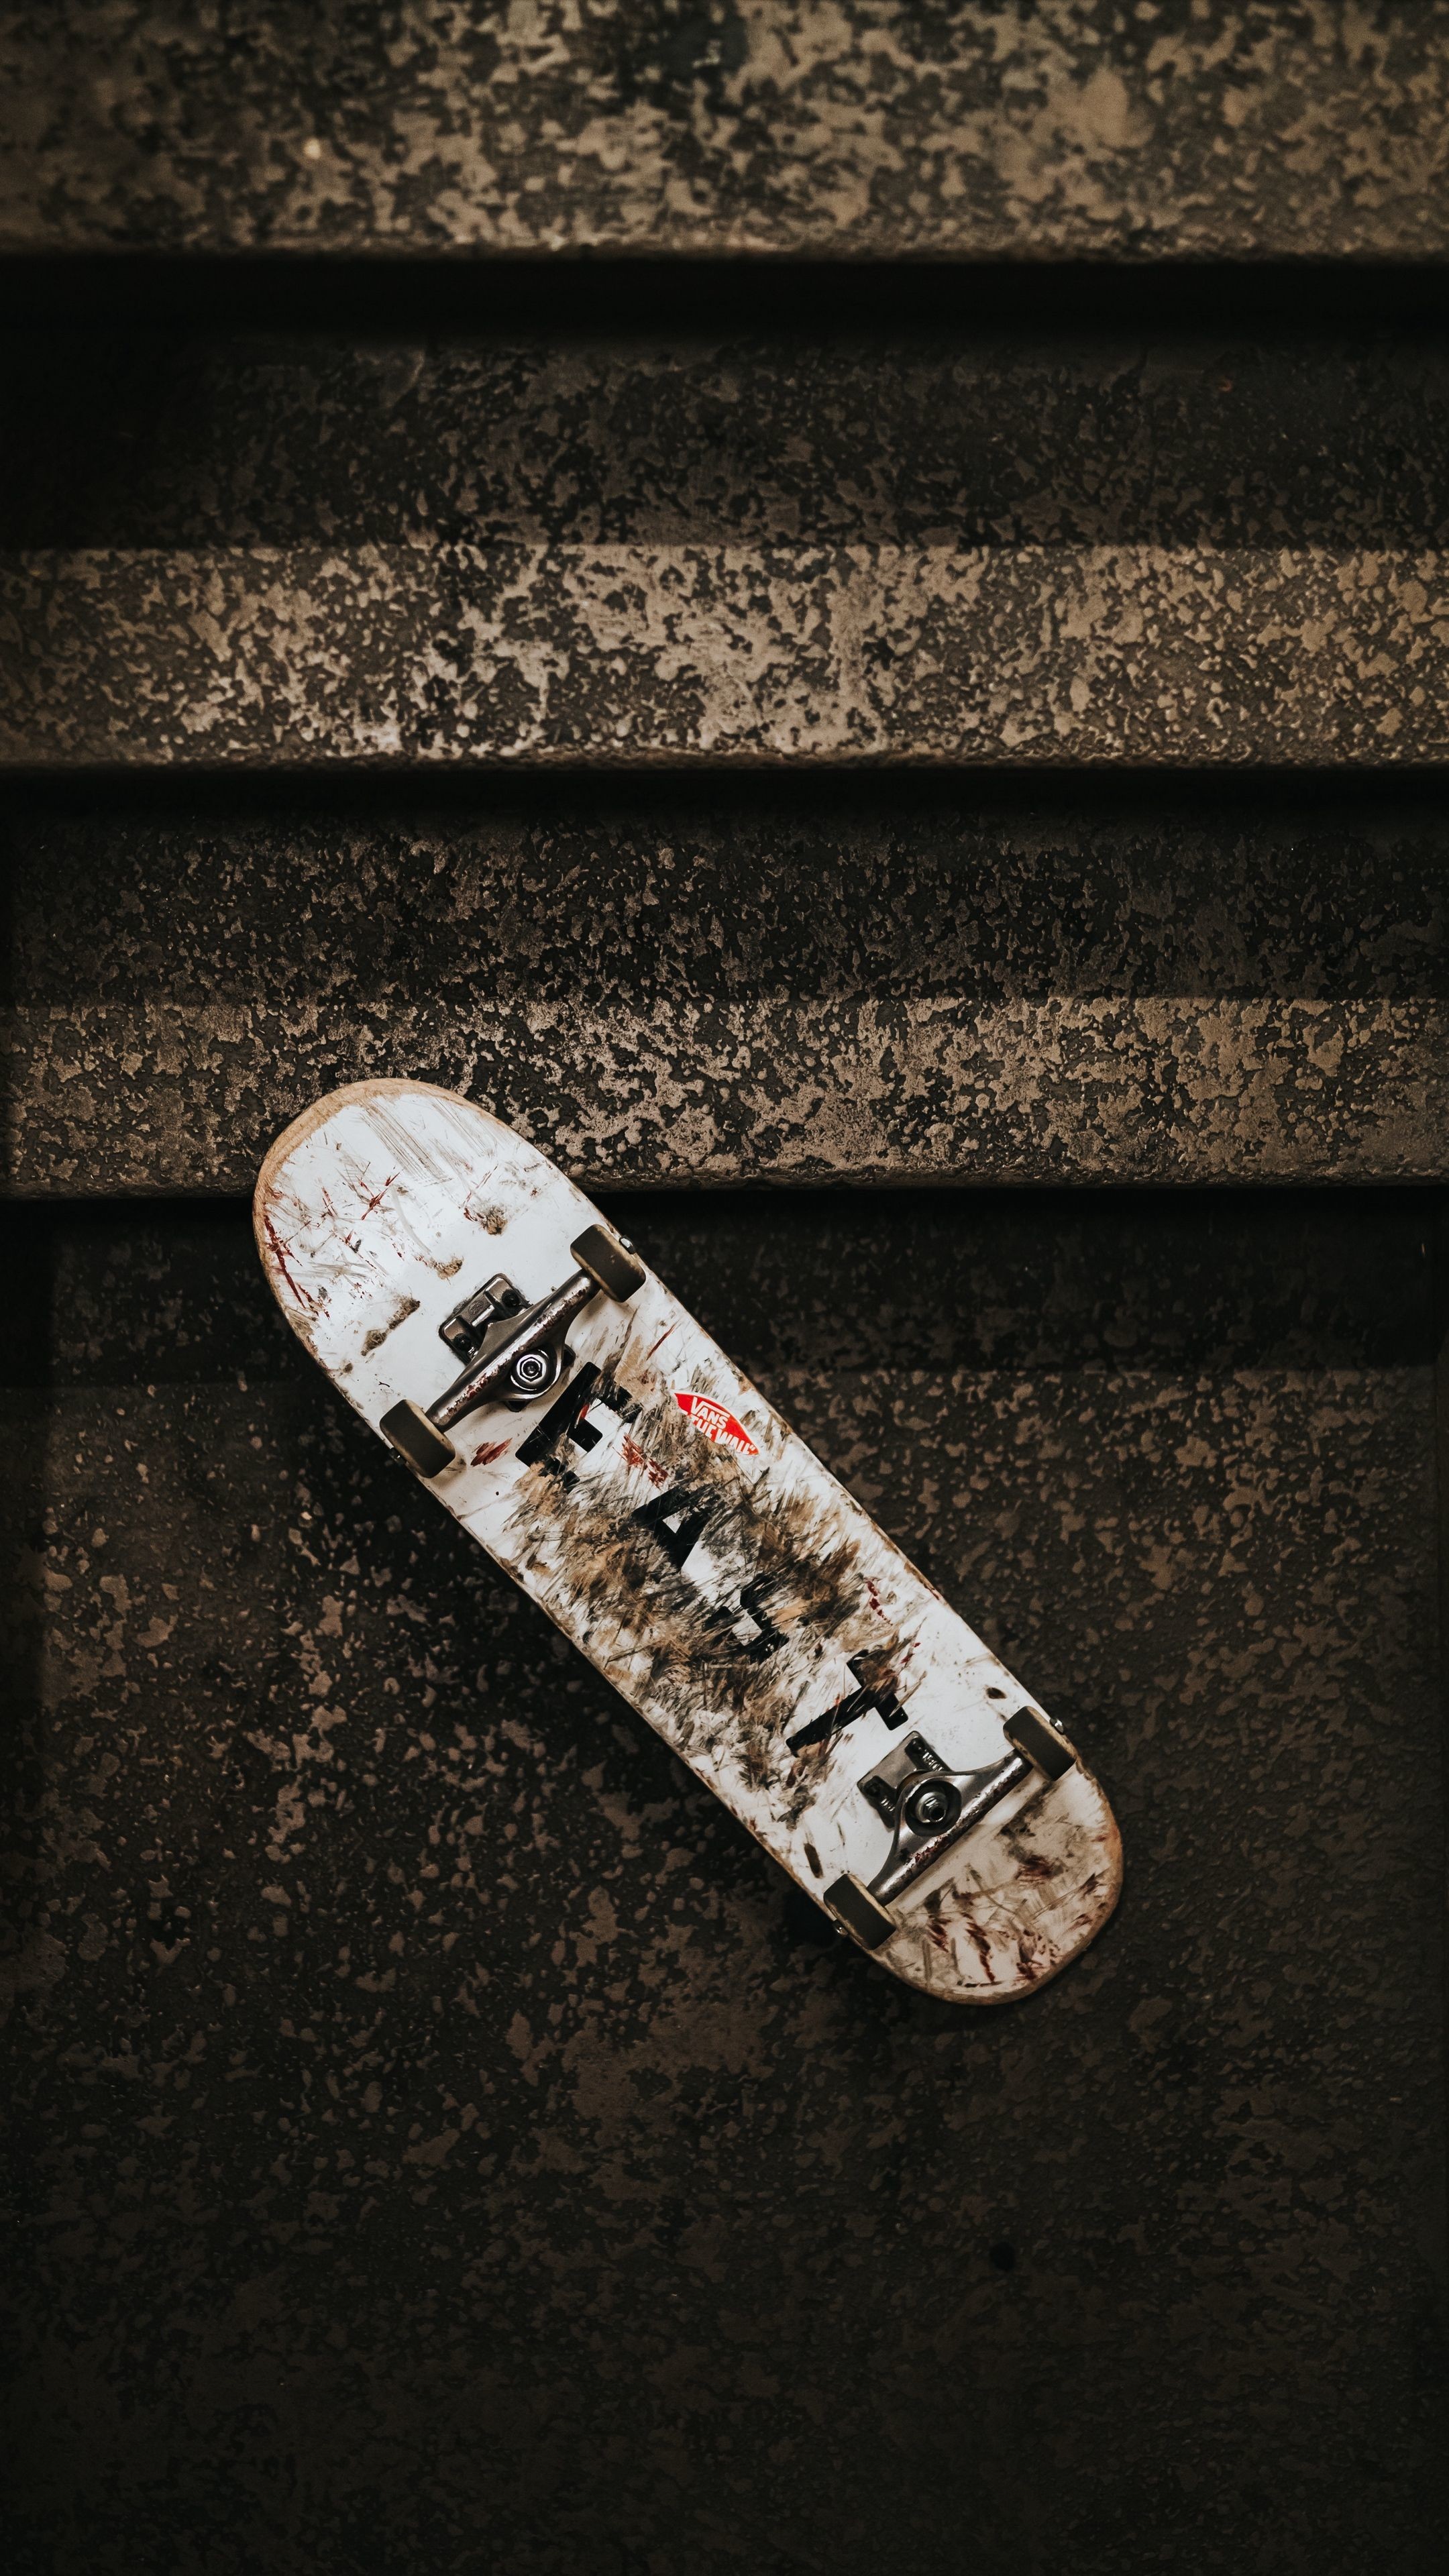 #sports #skateboard, #ladder, #wheels #wallpapers Hd - Skateboard Wallpaper For Iphone - HD Wallpaper 